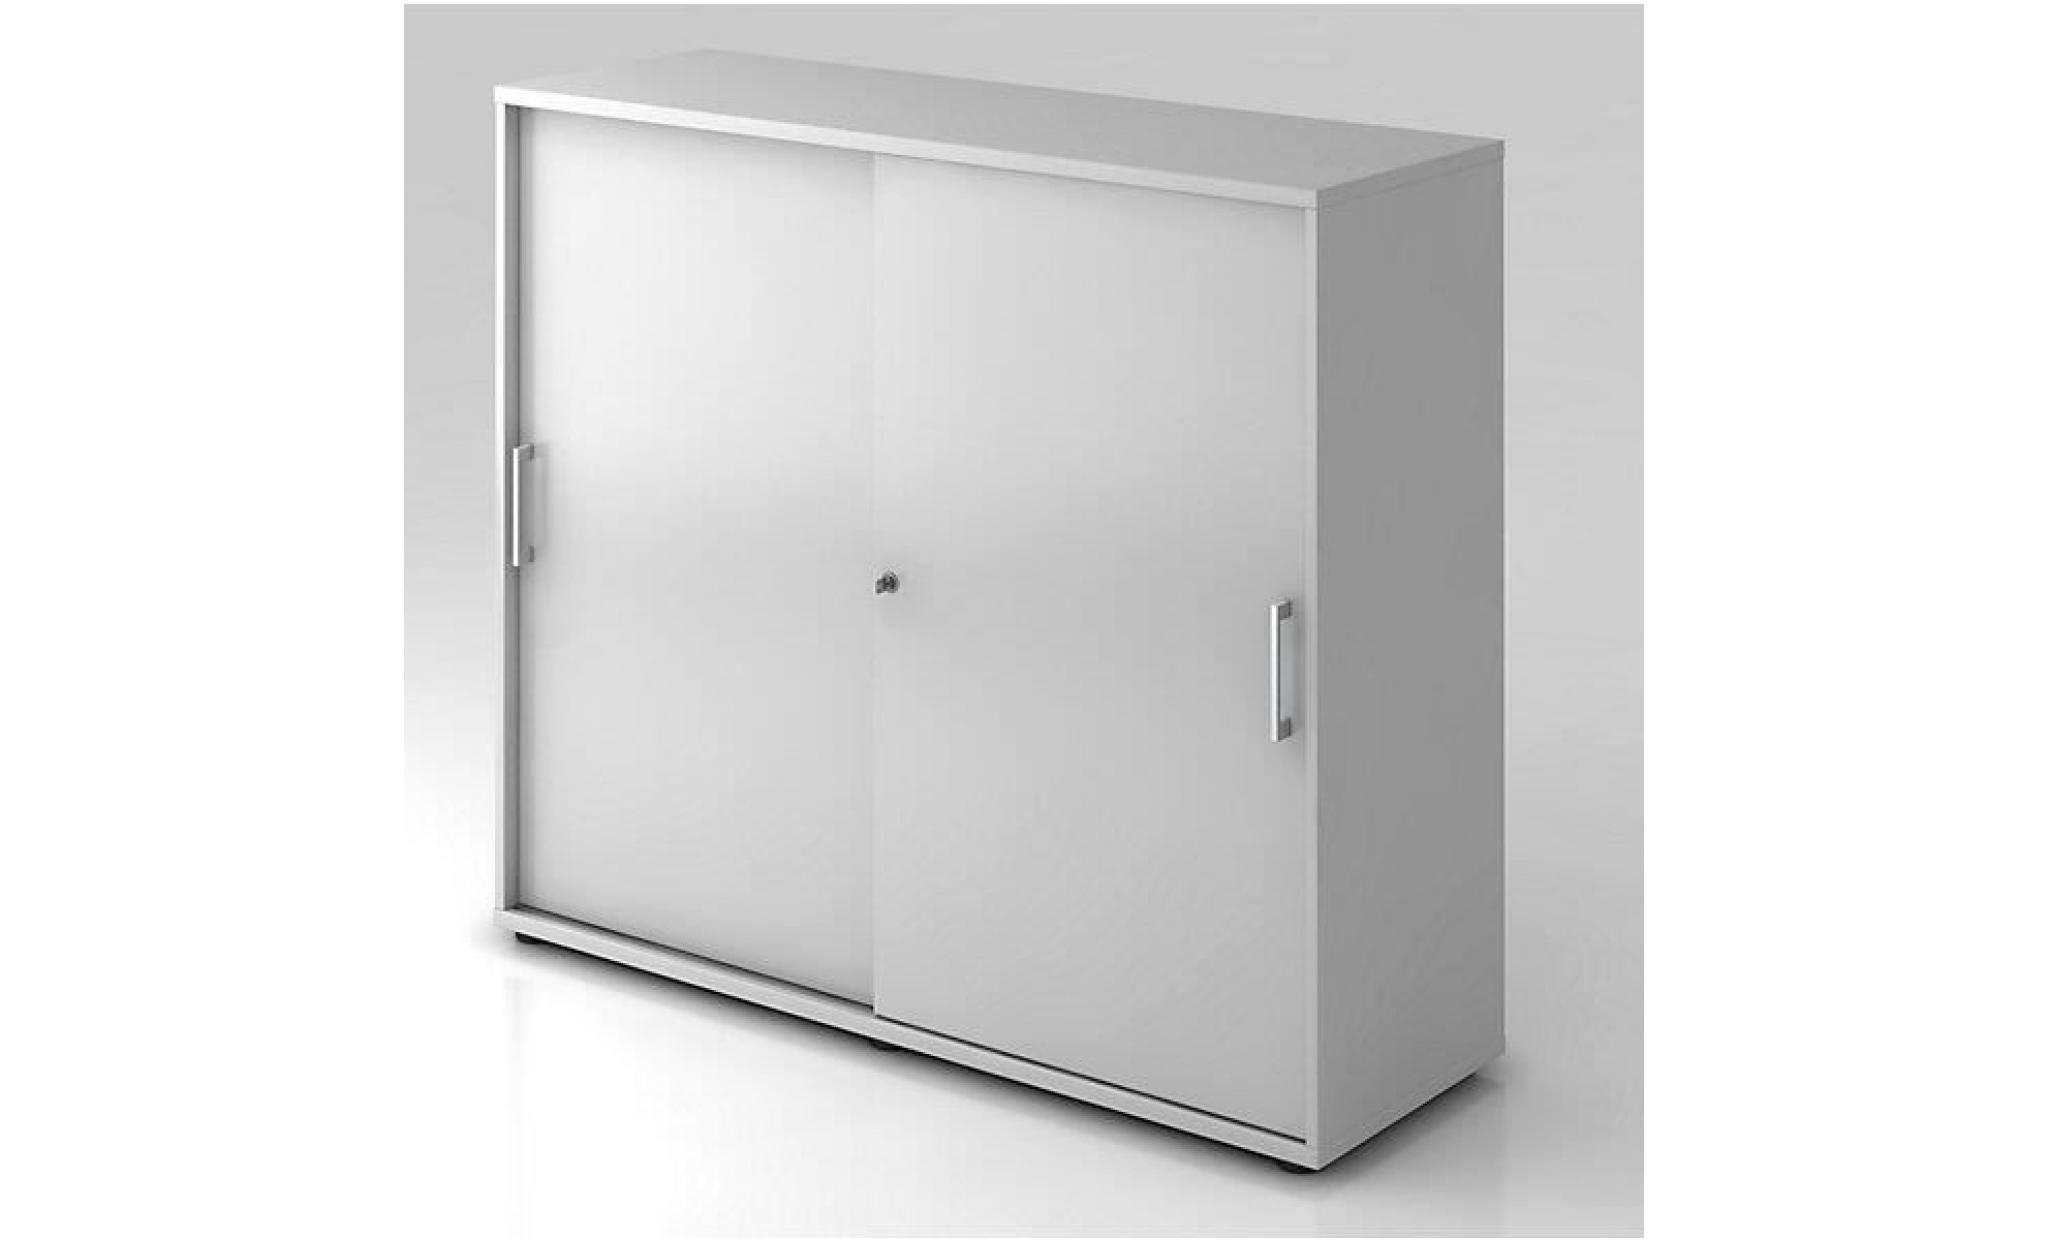 office akktiv armoire à portes coulissantes   hauteur 760 mm, 1 tablette   façon hêtre   armoire de bureau armoire à portes